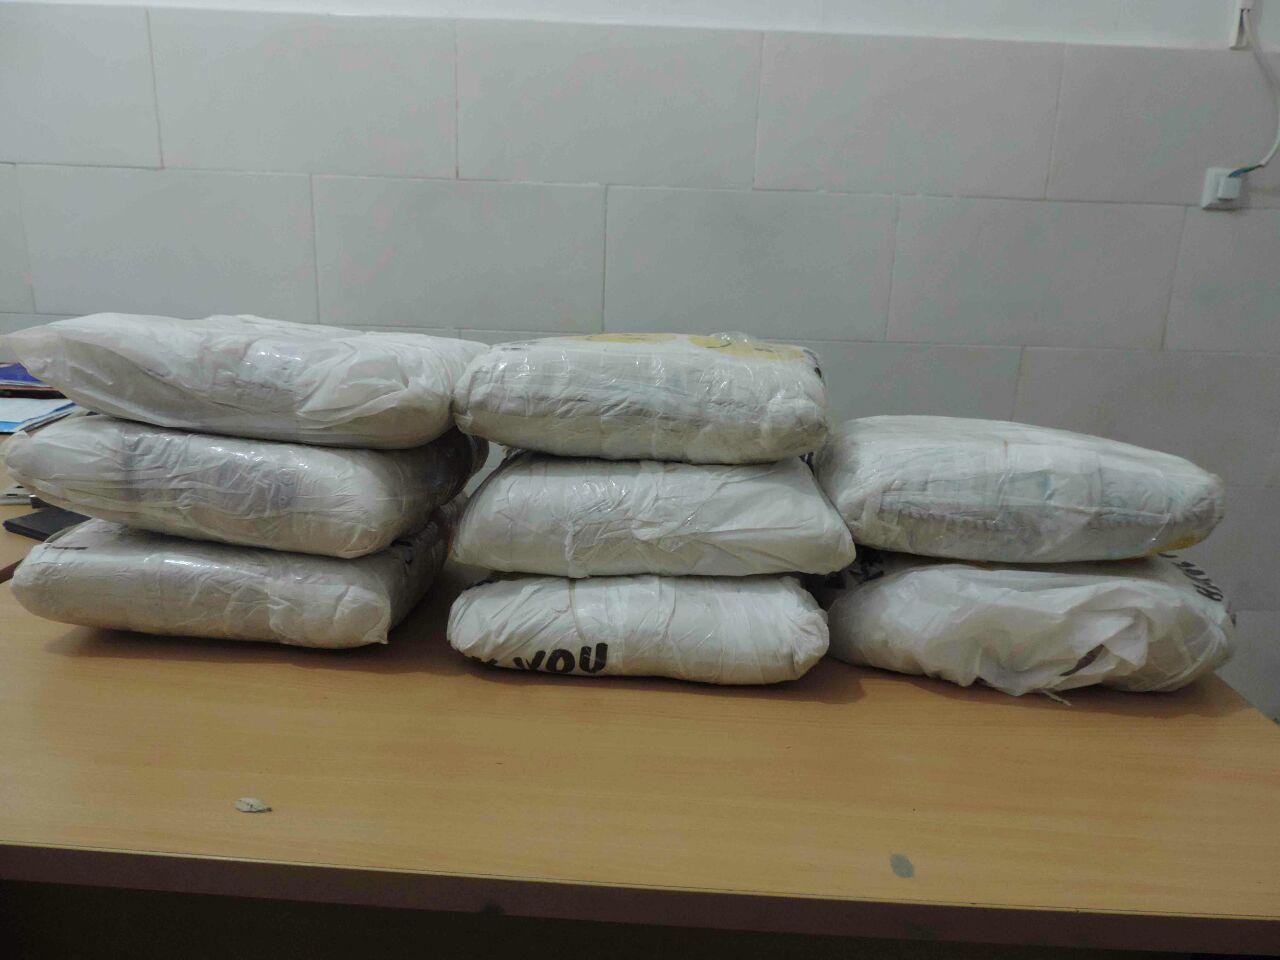 کشف 85 کیلوگرم تریاک در عملیات مشترک پلیس بوشهر و استان هرمزگان